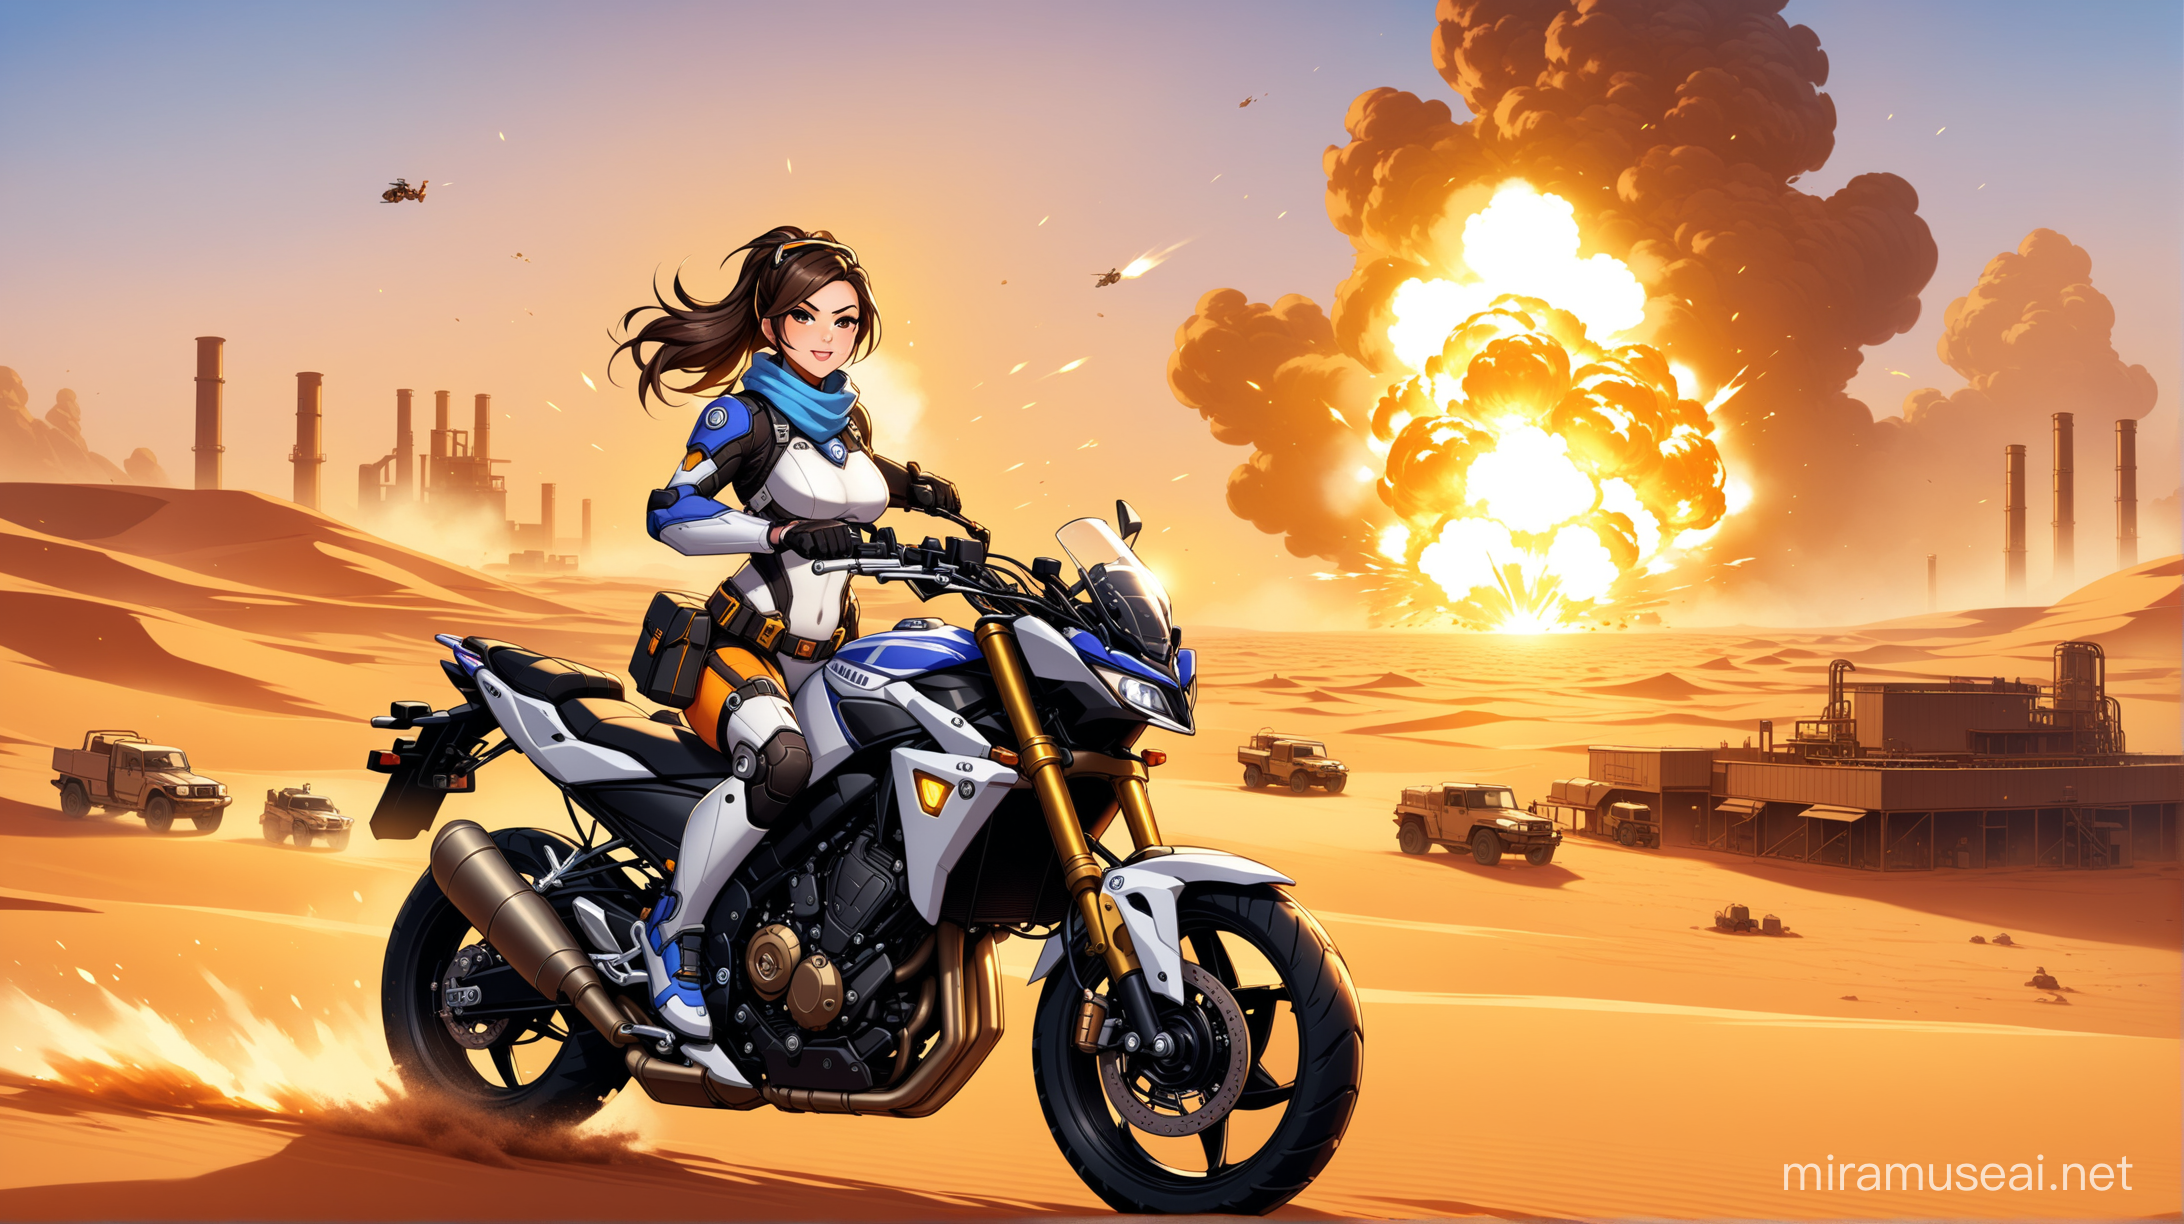 Chica personaje de overwatch, sobre una motocicleta Yamaha, en el desierto del sahara, al fondo una explosión de una fábrica de acero